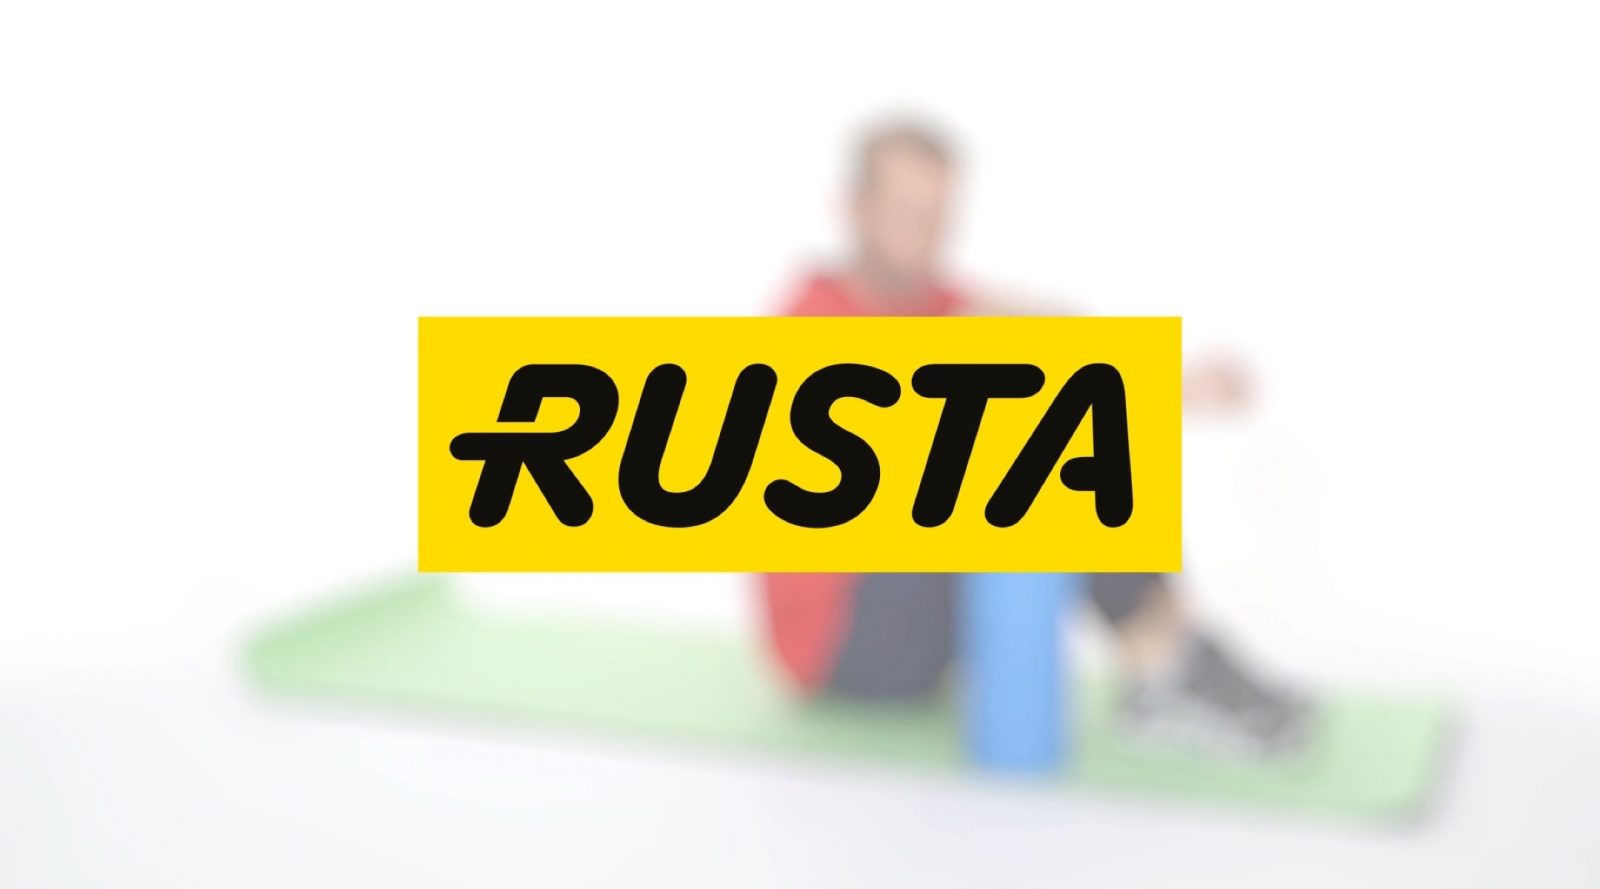 rusta-logo mot blurrad bakgrund där man ser en tränande människa